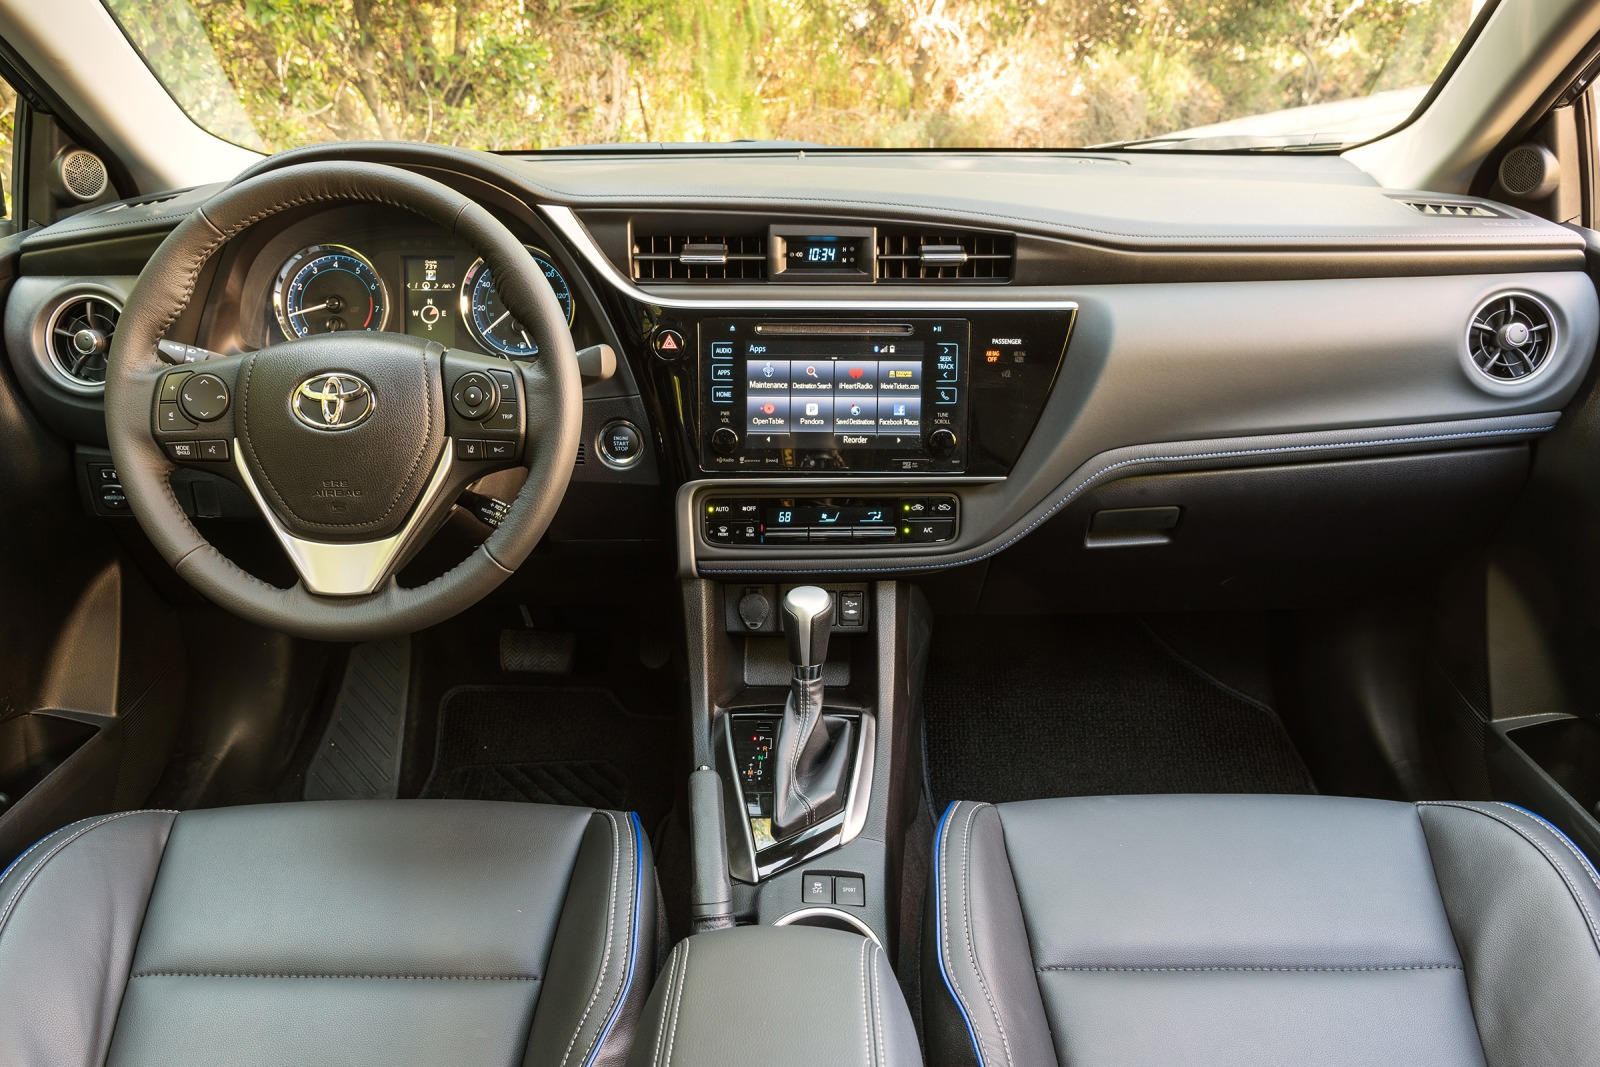 2019 Toyota Corolla Sedan Interior Photos | CarBuzz